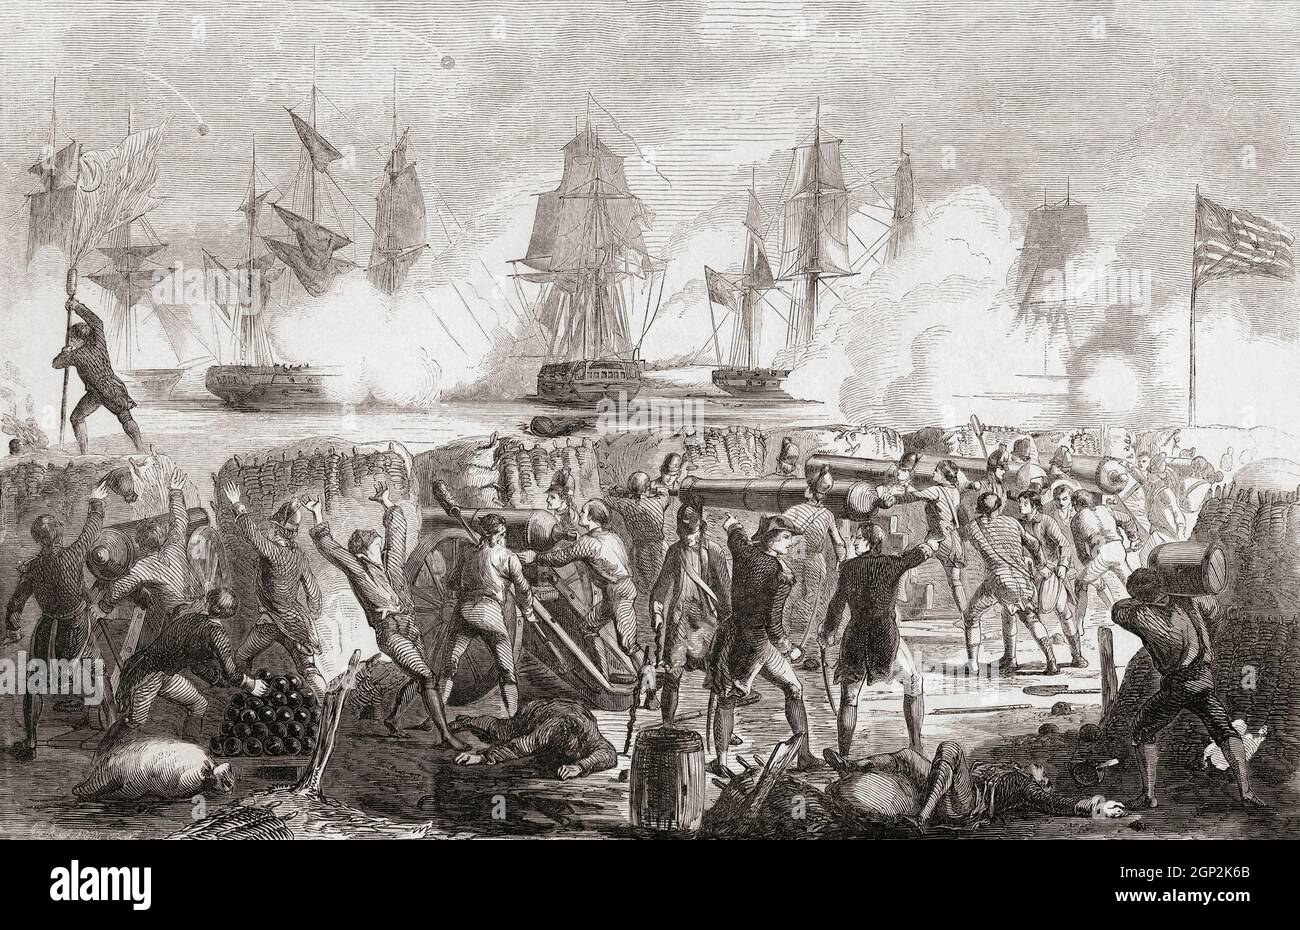 Der Angriff auf Fort Moultrie, Sullivan's Island, South Carolina, am 28. Juni 1776 während der Amerikanischen Revolution. Das Fort, das damals Fort Sullivan genannt wurde, wurde zur Verteidigung von Charleston, South Carolina, gebaut, wurde aber nur teilweise fertiggestellt, als neun britische Kriegsschiffe angriffen. Das Fort widerstand jedoch dem Bombardement und sie wurden gezwungen, sich unter schwerem Verteidigungsfeuer zurückzuziehen. Der Kommandant des Forts während der Schlacht war William Moultrie, das Fort wurde später zu seinen Ehren umbenannt. Stockfoto